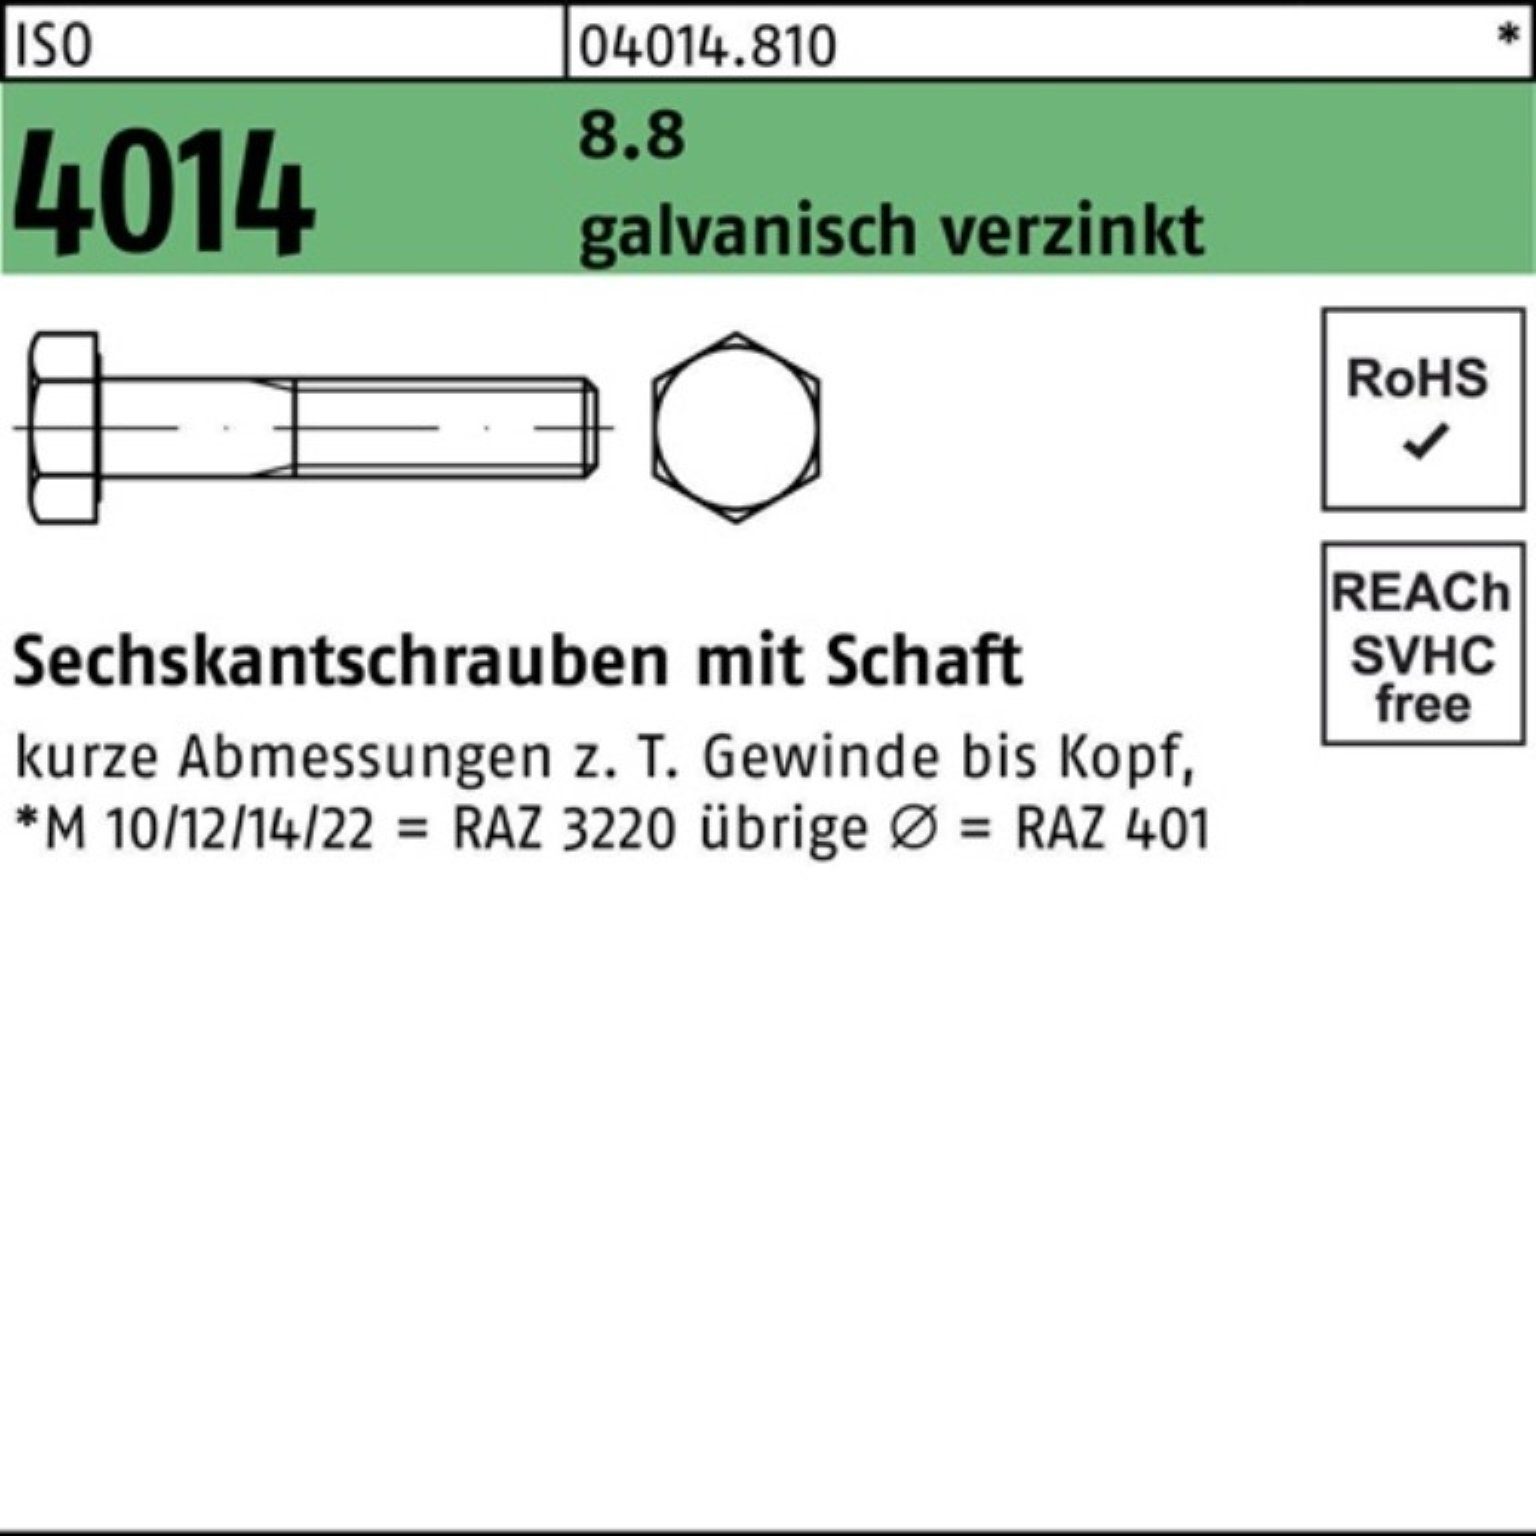 Bufab Sechskantschraube 100er 8.8 galv.verz. Sechskantschraube M12x 4014 ISO 240 Schaft 2 Pack